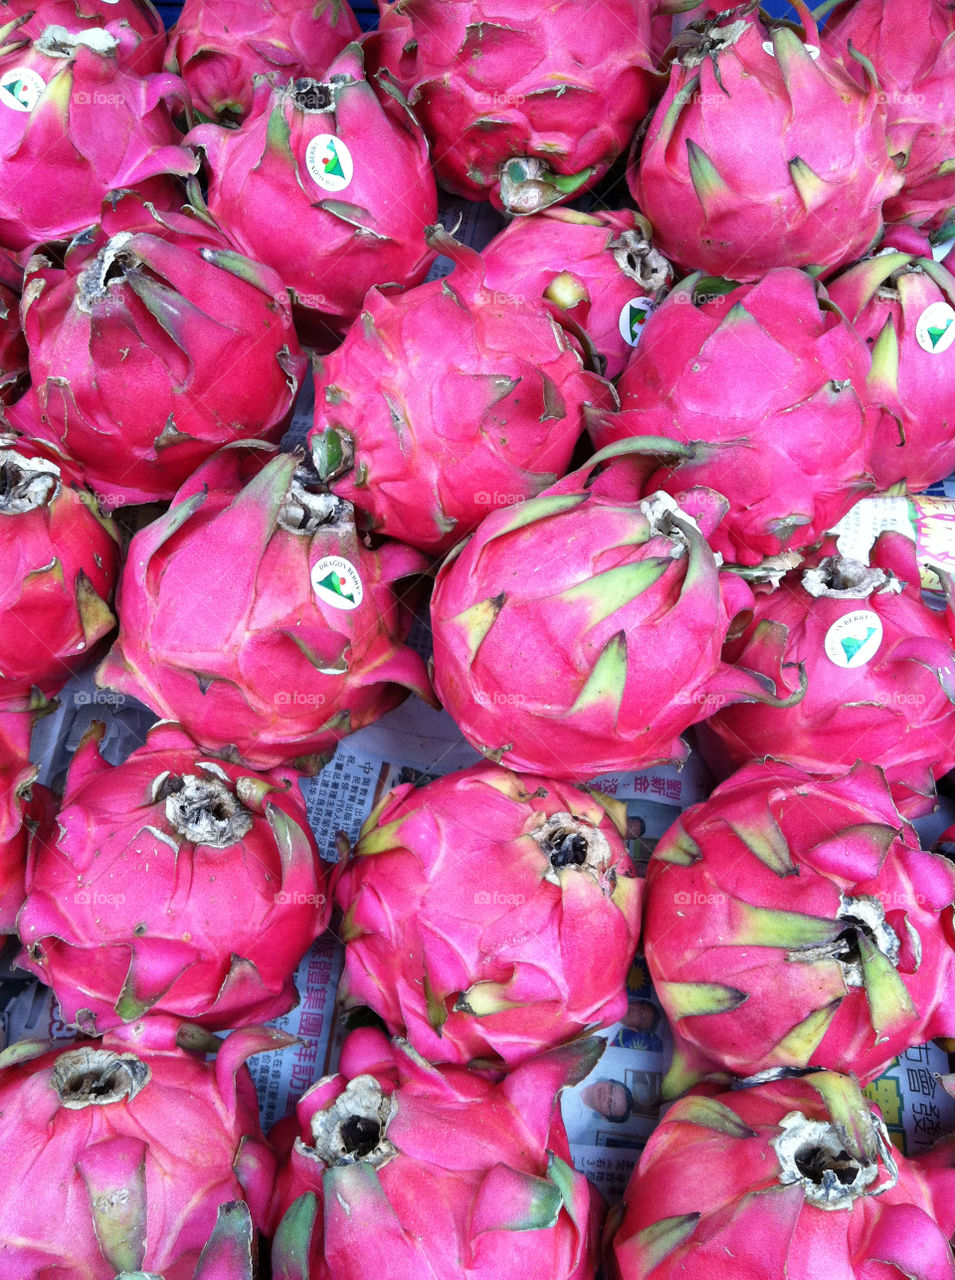 fruit dragon malaysia kuala by spiffysavannah